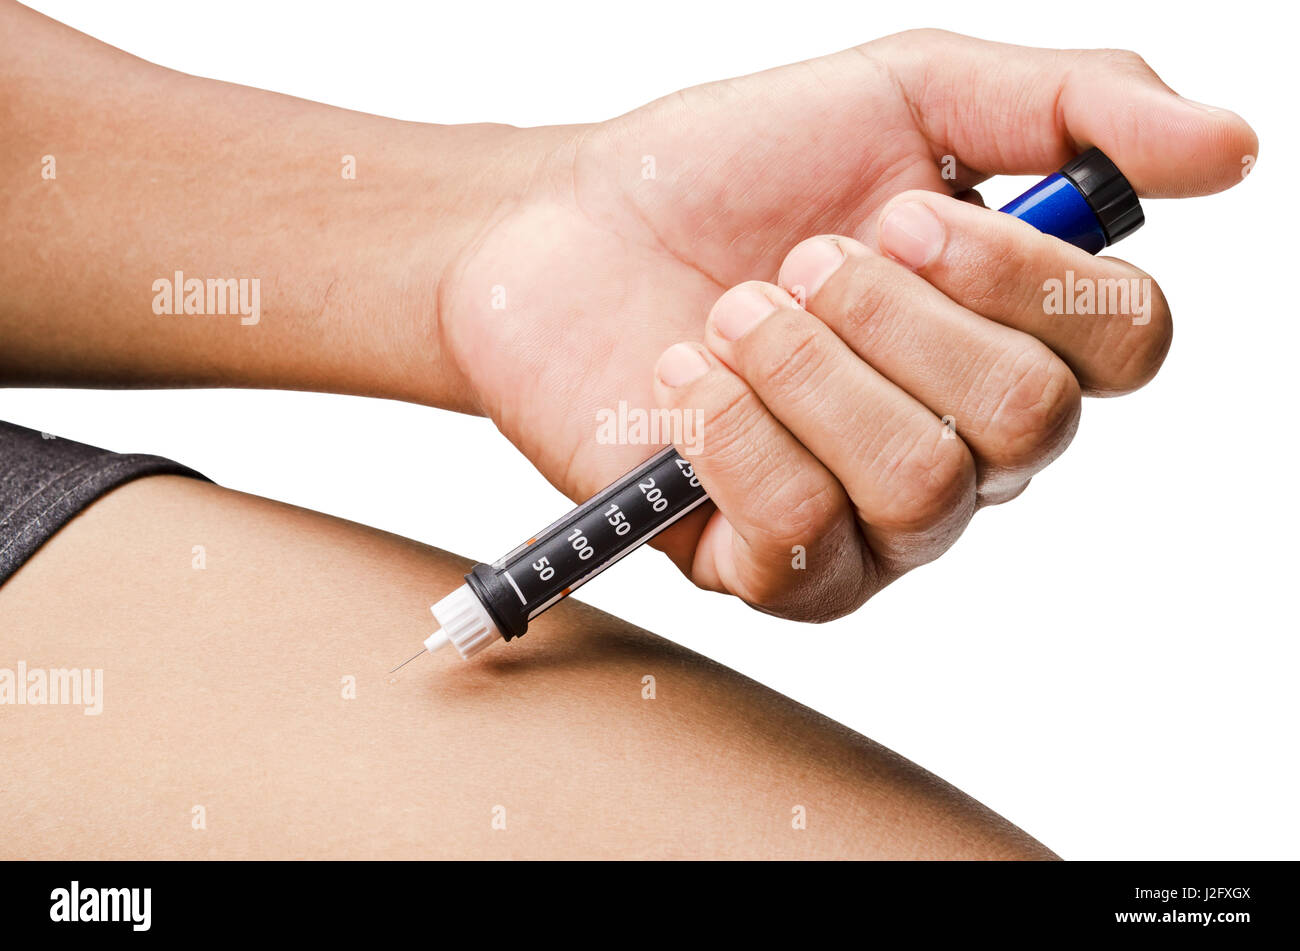 Les mains de l'homme faire l'injection par seringue ou stylo à insuline à la jambe. Isolé sur fond blanc, chemin de détourage. Banque D'Images